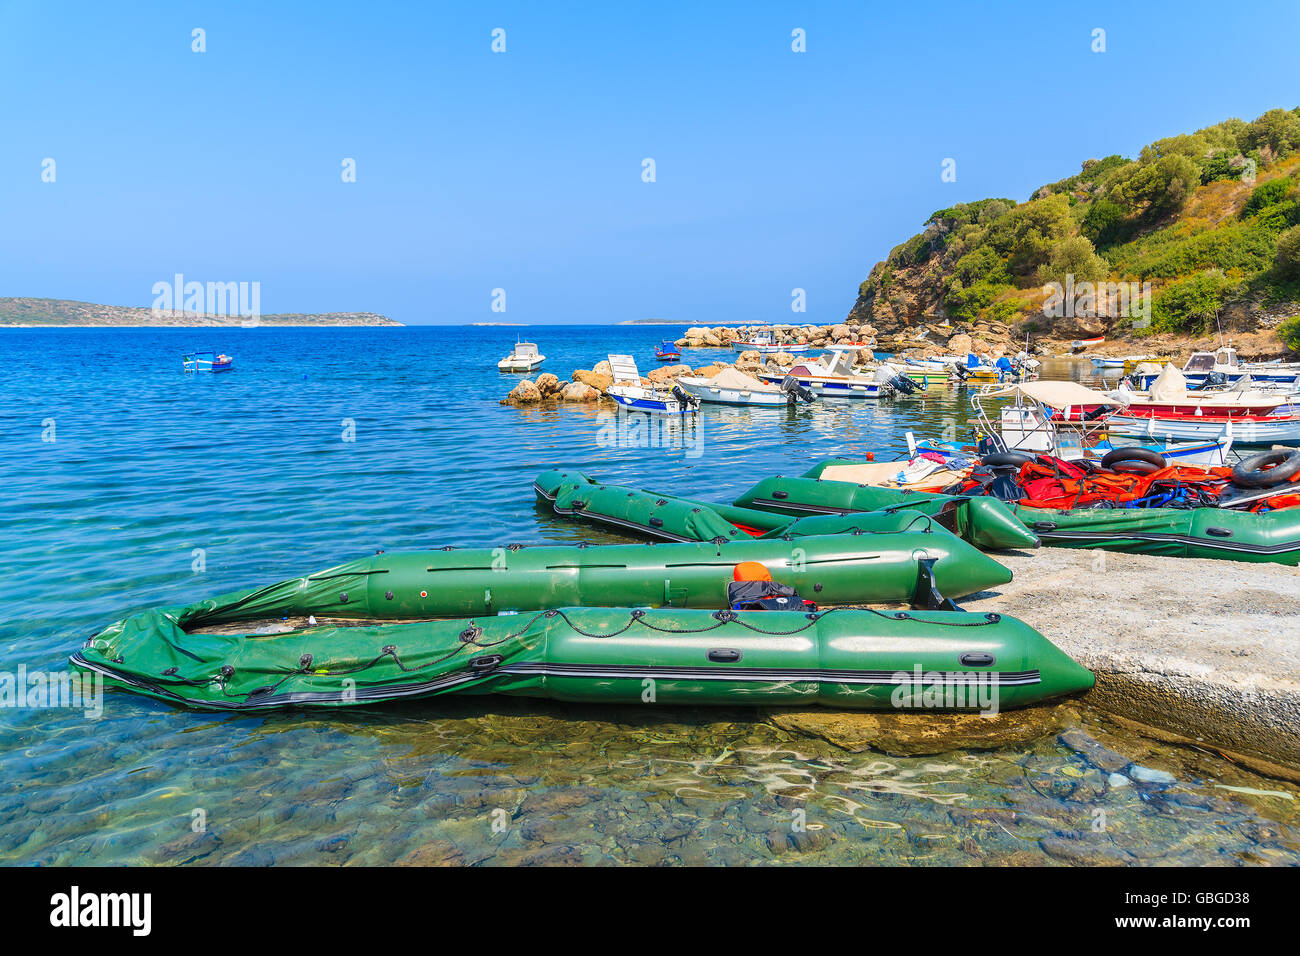 Insel SAMOS, Griechenland - SEP 20, 2015: Schlauchboote in kleinen Bucht auf der Südküste von Samos Insel, Griechenland. Hier kommen Flüchtlinge aus T Stockfoto